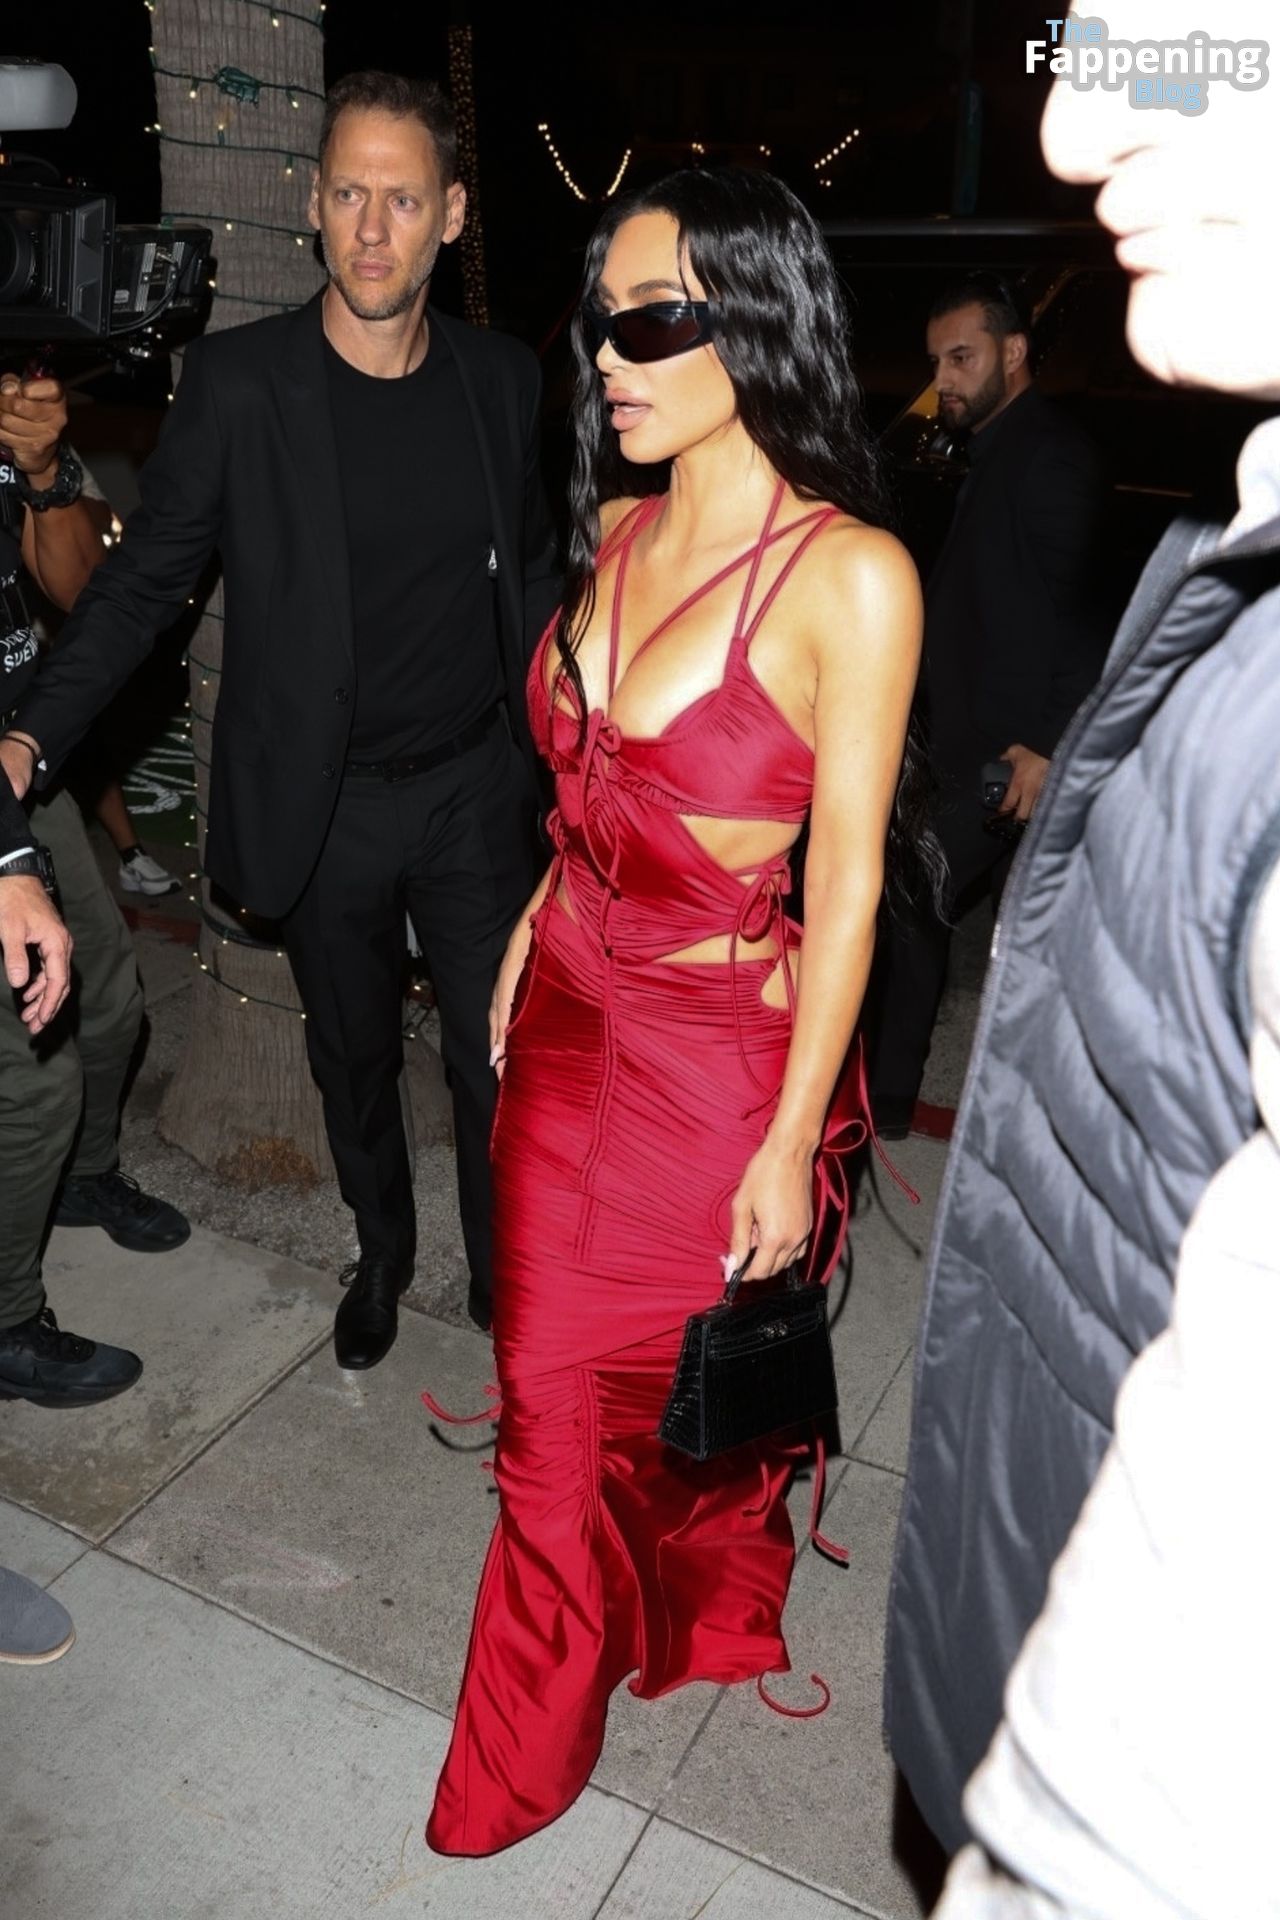 Kim-Kardashian-Sexy-32-The-Fappening-Blog-1.jpg